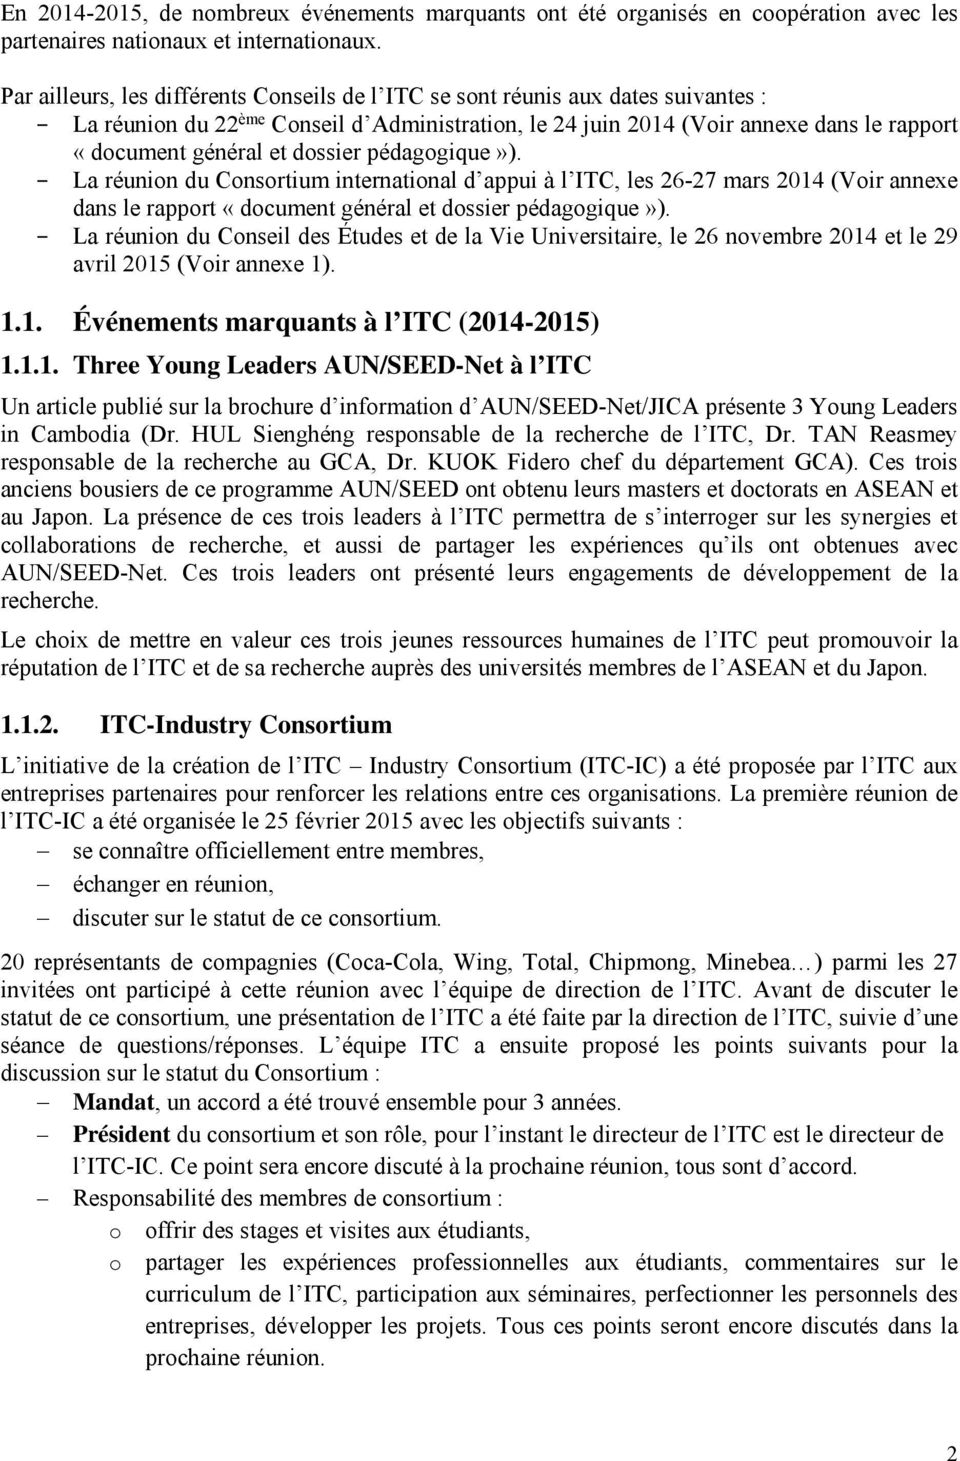 dossier pédagogique»). La réunion du Consortium international d appui à l ITC, les 26-27 mars 2014 (Voir annexe dans le rapport «document général et dossier pédagogique»).